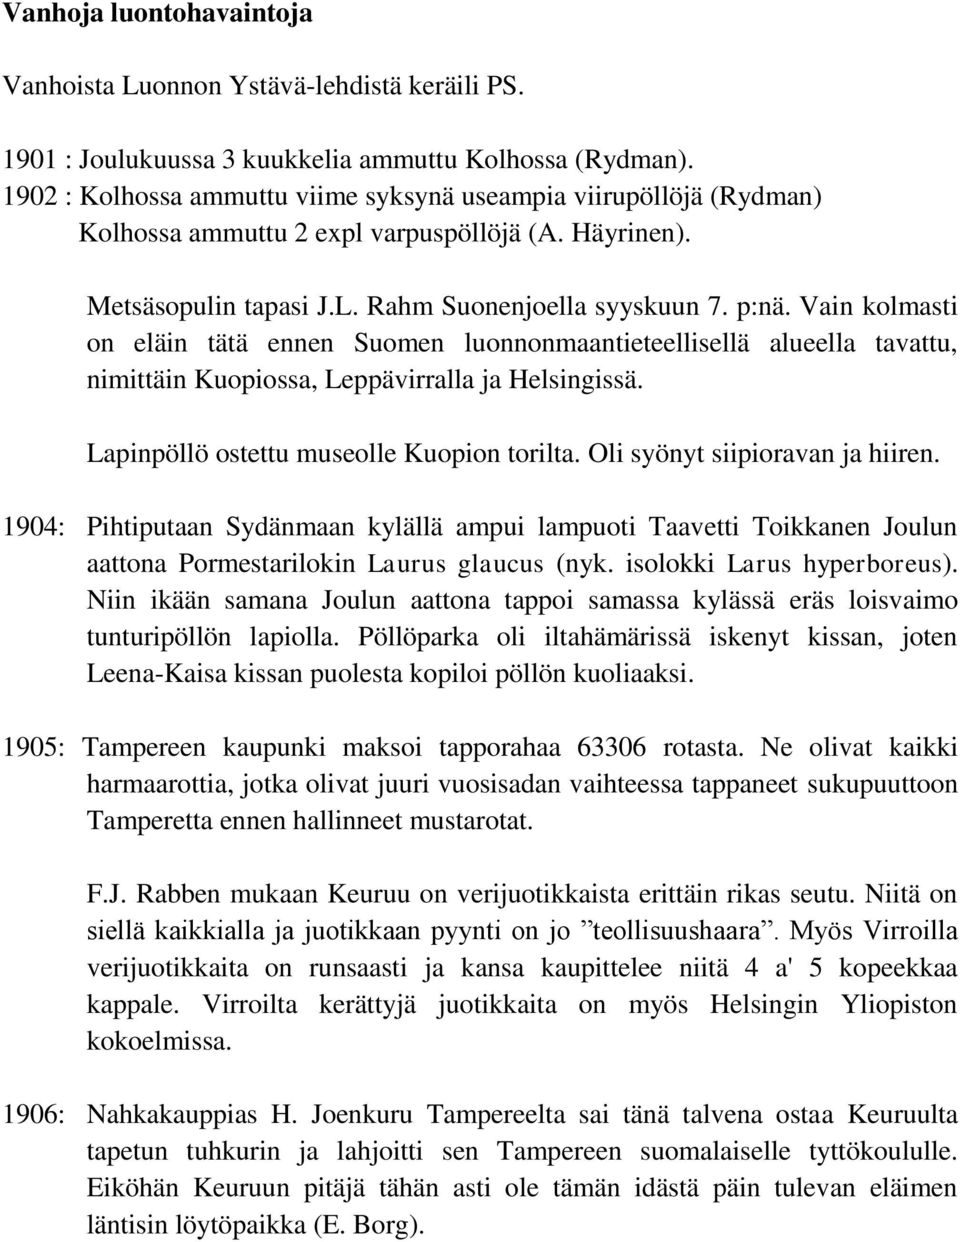 Vain kolmasti on eläin tätä ennen Suomen luonnonmaantieteellisellä alueella tavattu, nimittäin Kuopiossa, Leppävirralla ja Helsingissä. Lapinpöllö ostettu museolle Kuopion torilta.